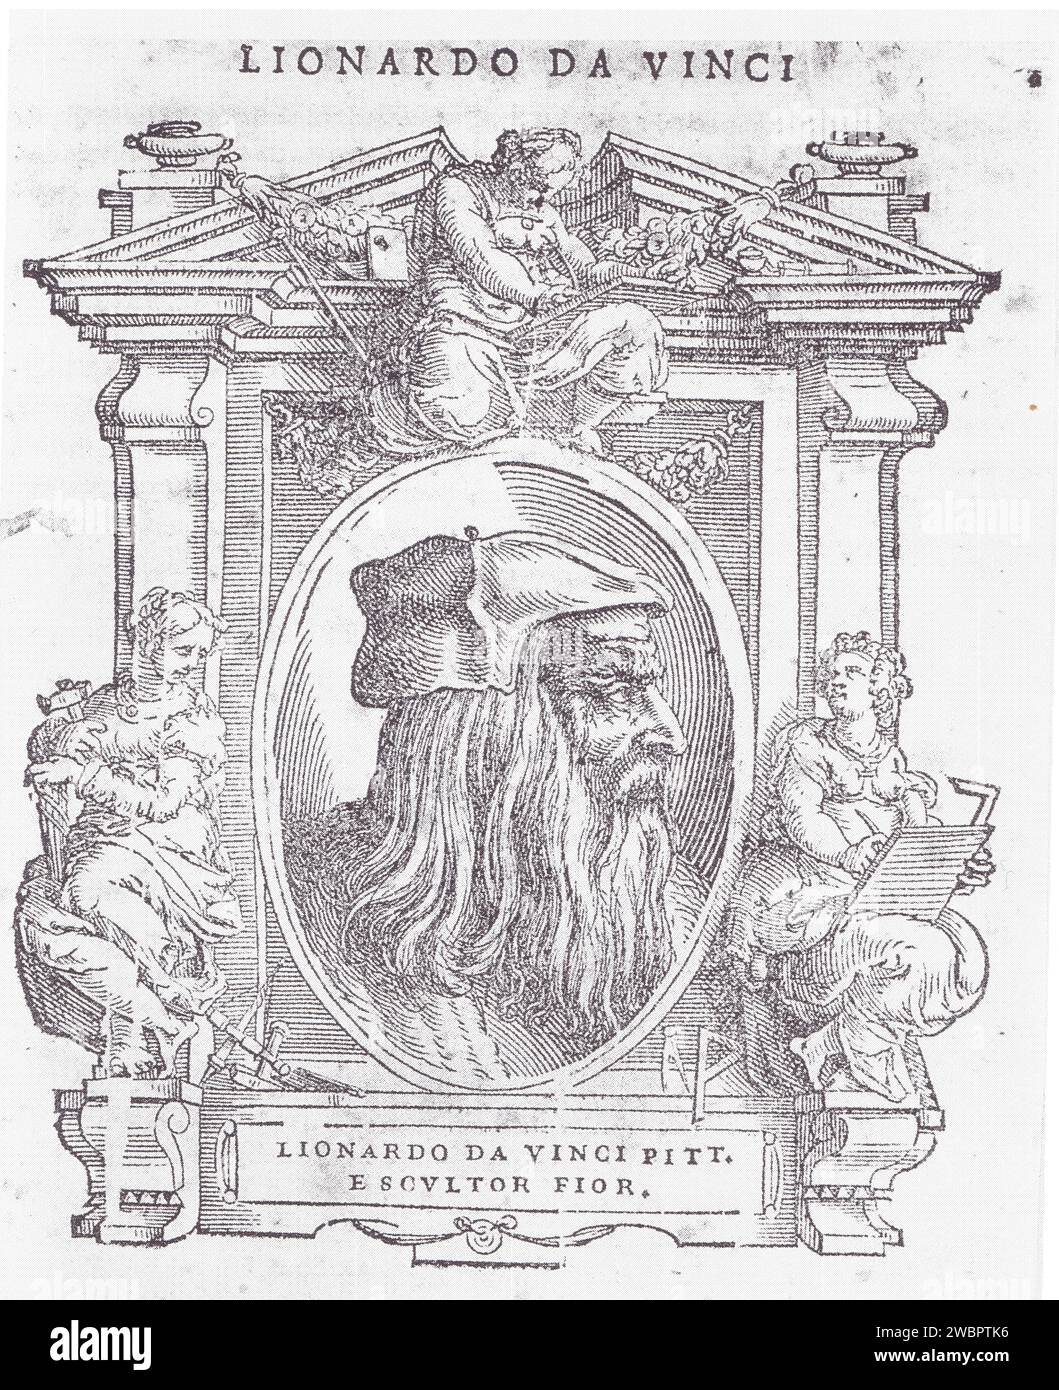 PORTRAIT DE LÉONARD DE VINCI.COUPE DE BOIS DE LA VIE DES ARTISTES DE VASARI.1568 Banque D'Images